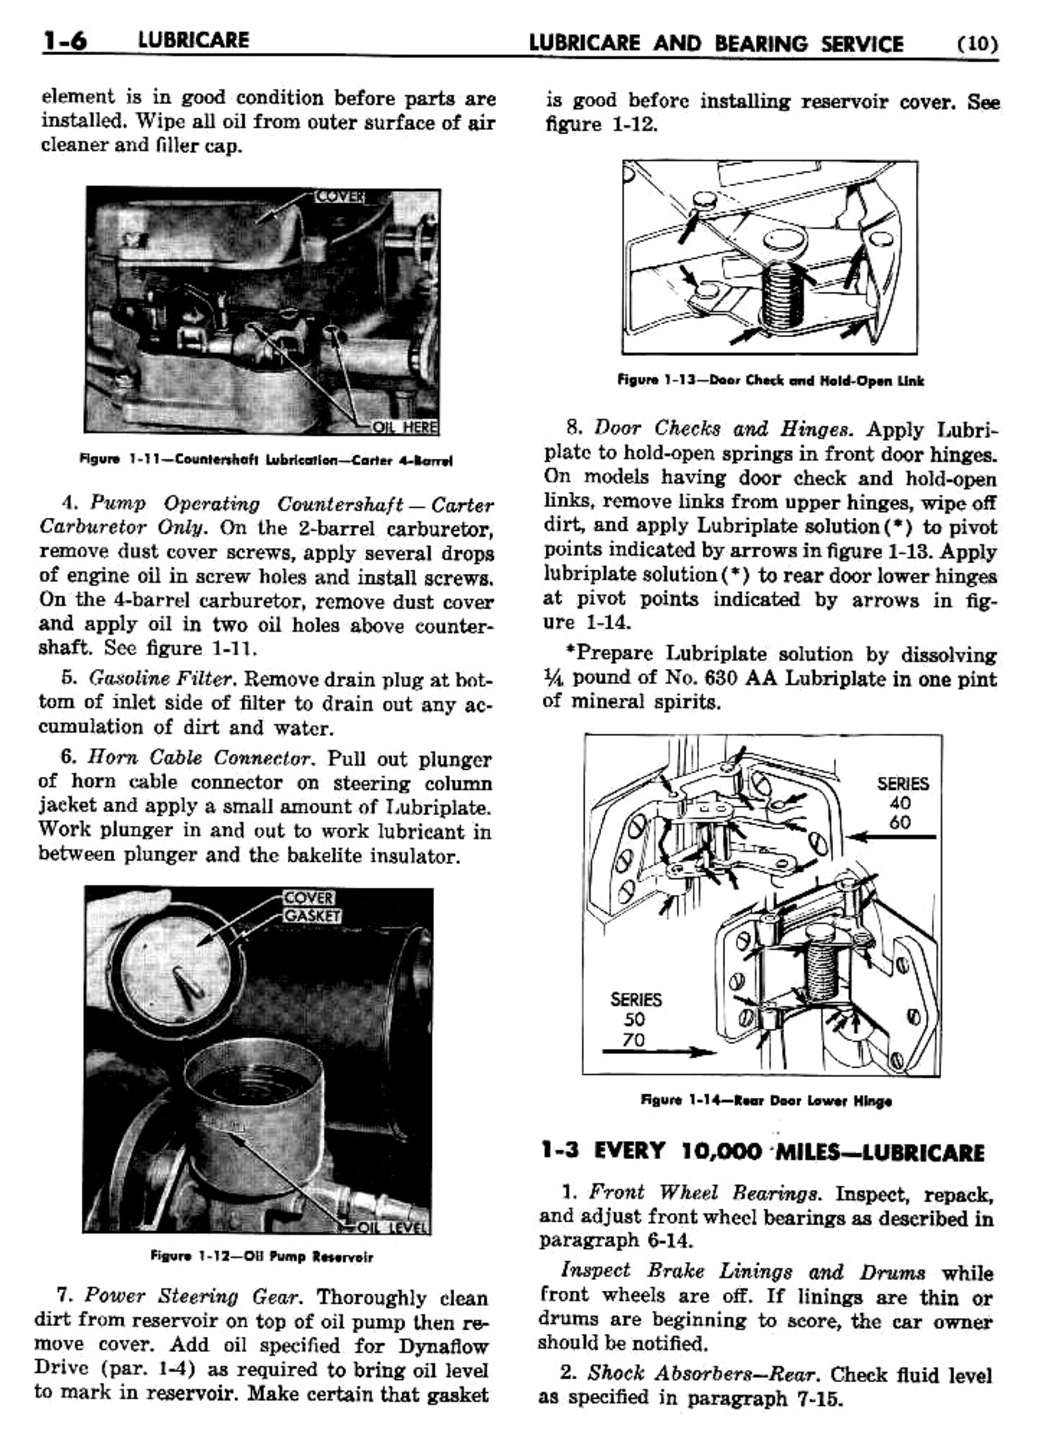 n_02 1955 Buick Shop Manual - Lubricare-006-006.jpg